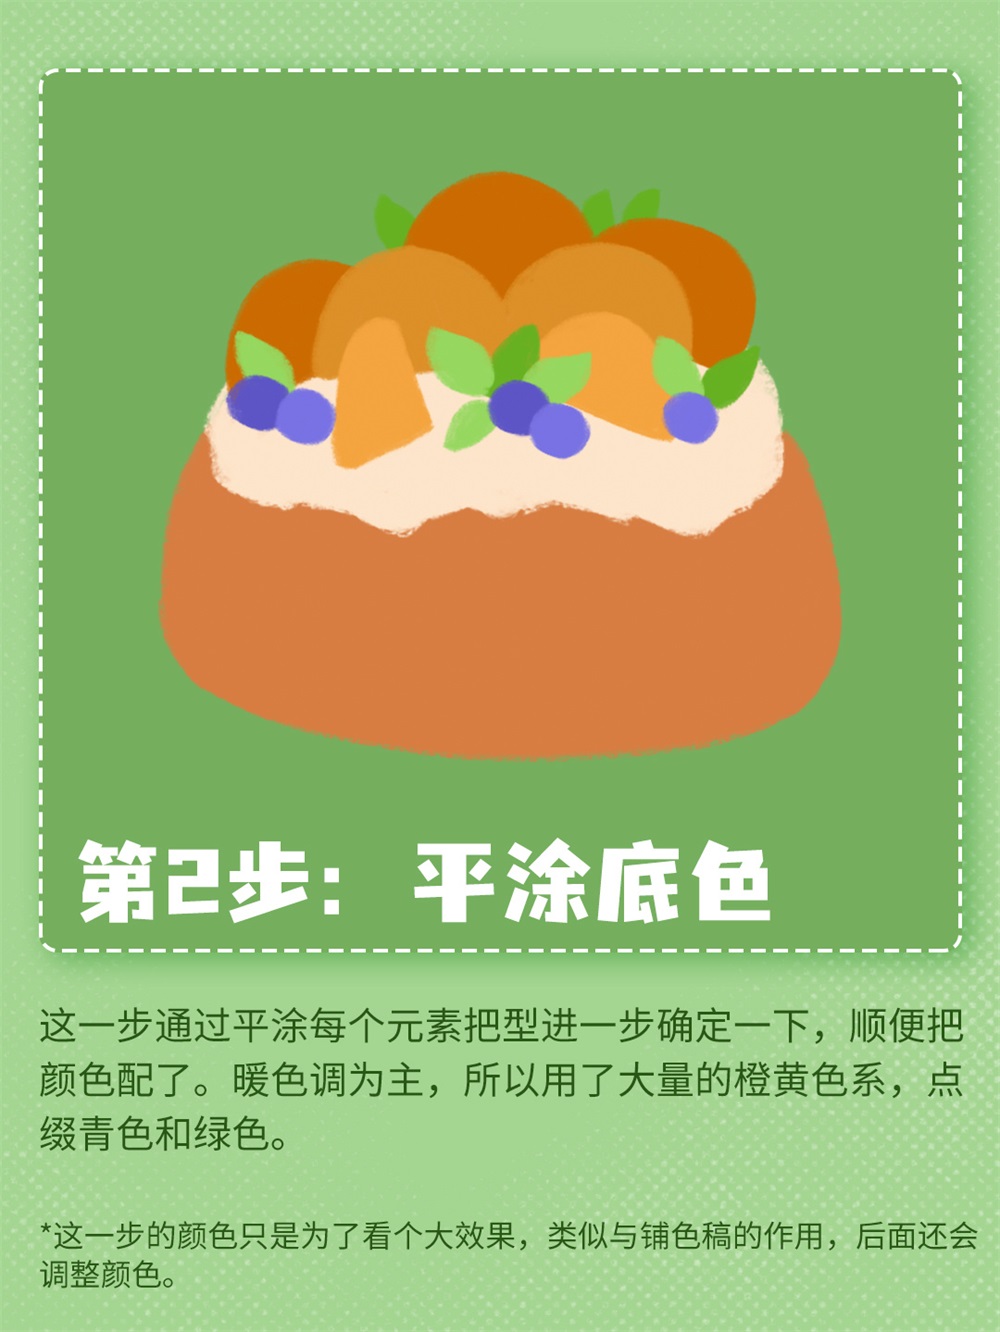 美食插画！6 步绘制松软香甜的橙子蛋糕